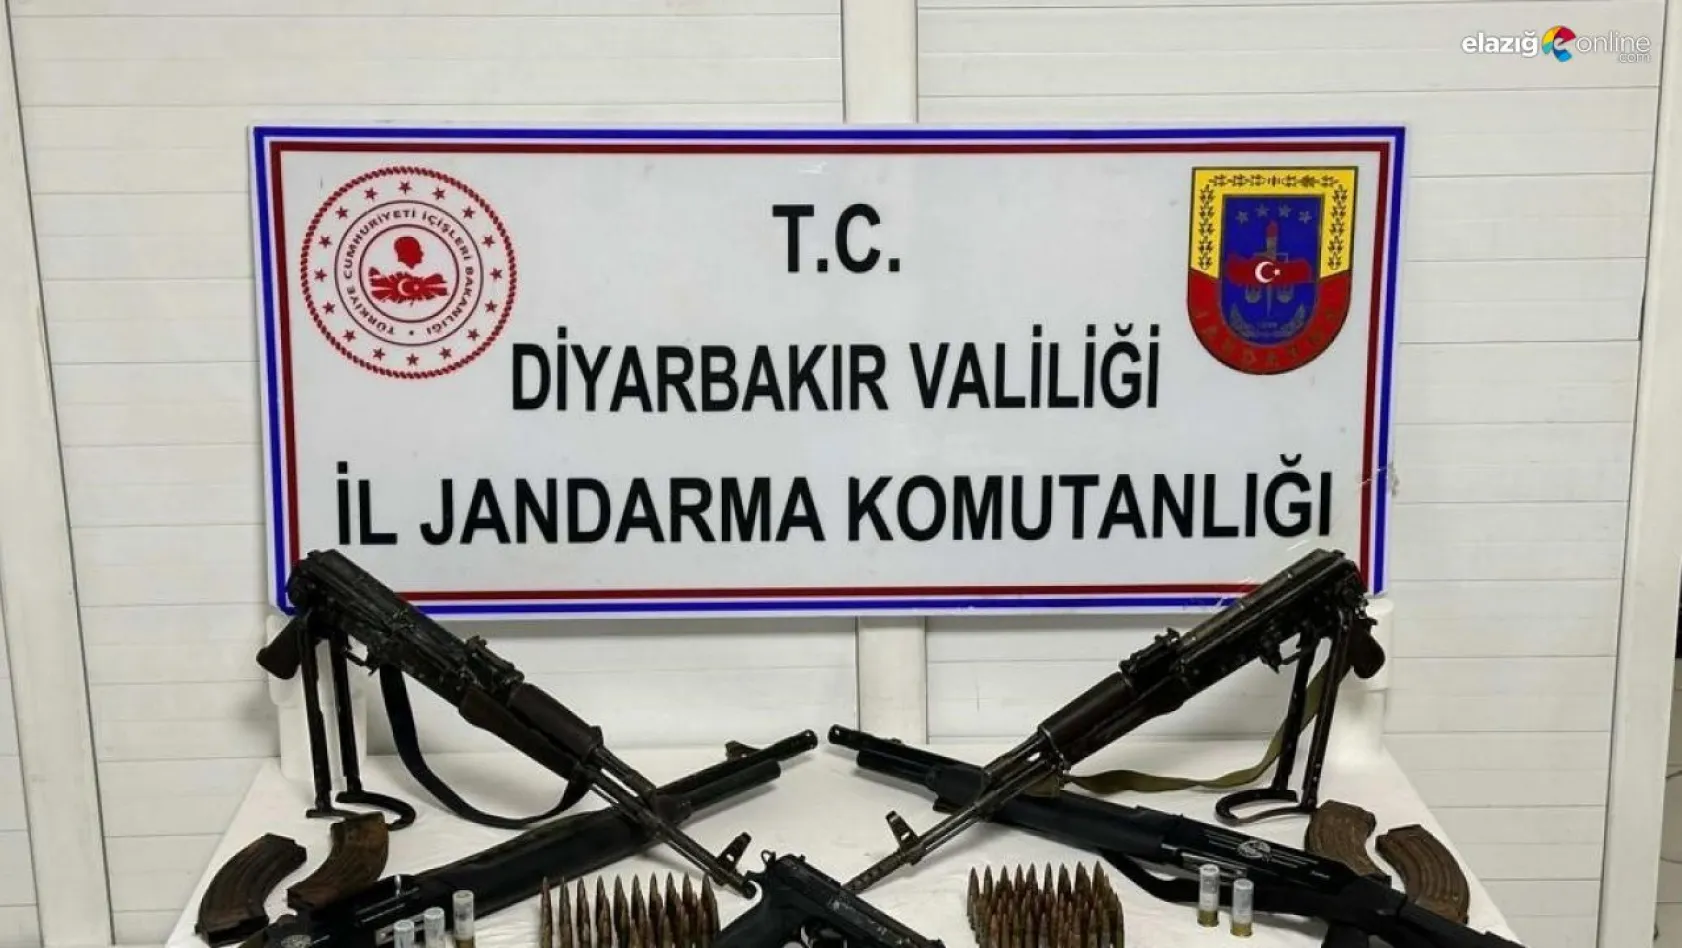 Diyarbakır'da iki adreste yapılan aramalarda uzun namlulu silahlar ele geçirildi